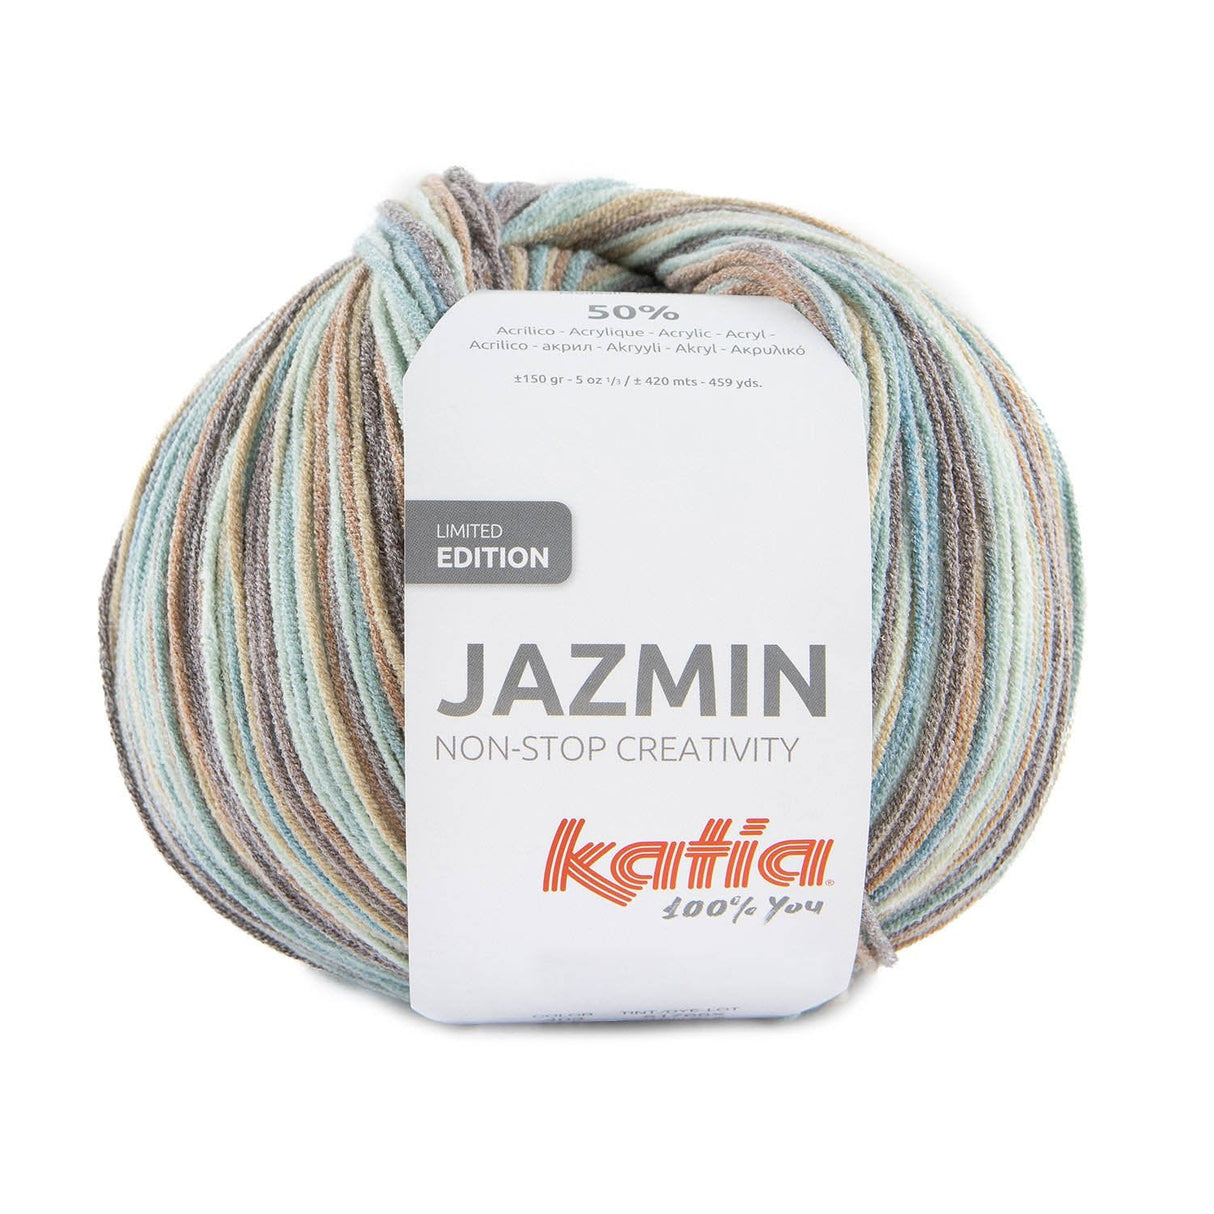 Katia JAZMIN en couleurs pastel - Laine en édition limitée avec toucher doux et imprimé multicolore